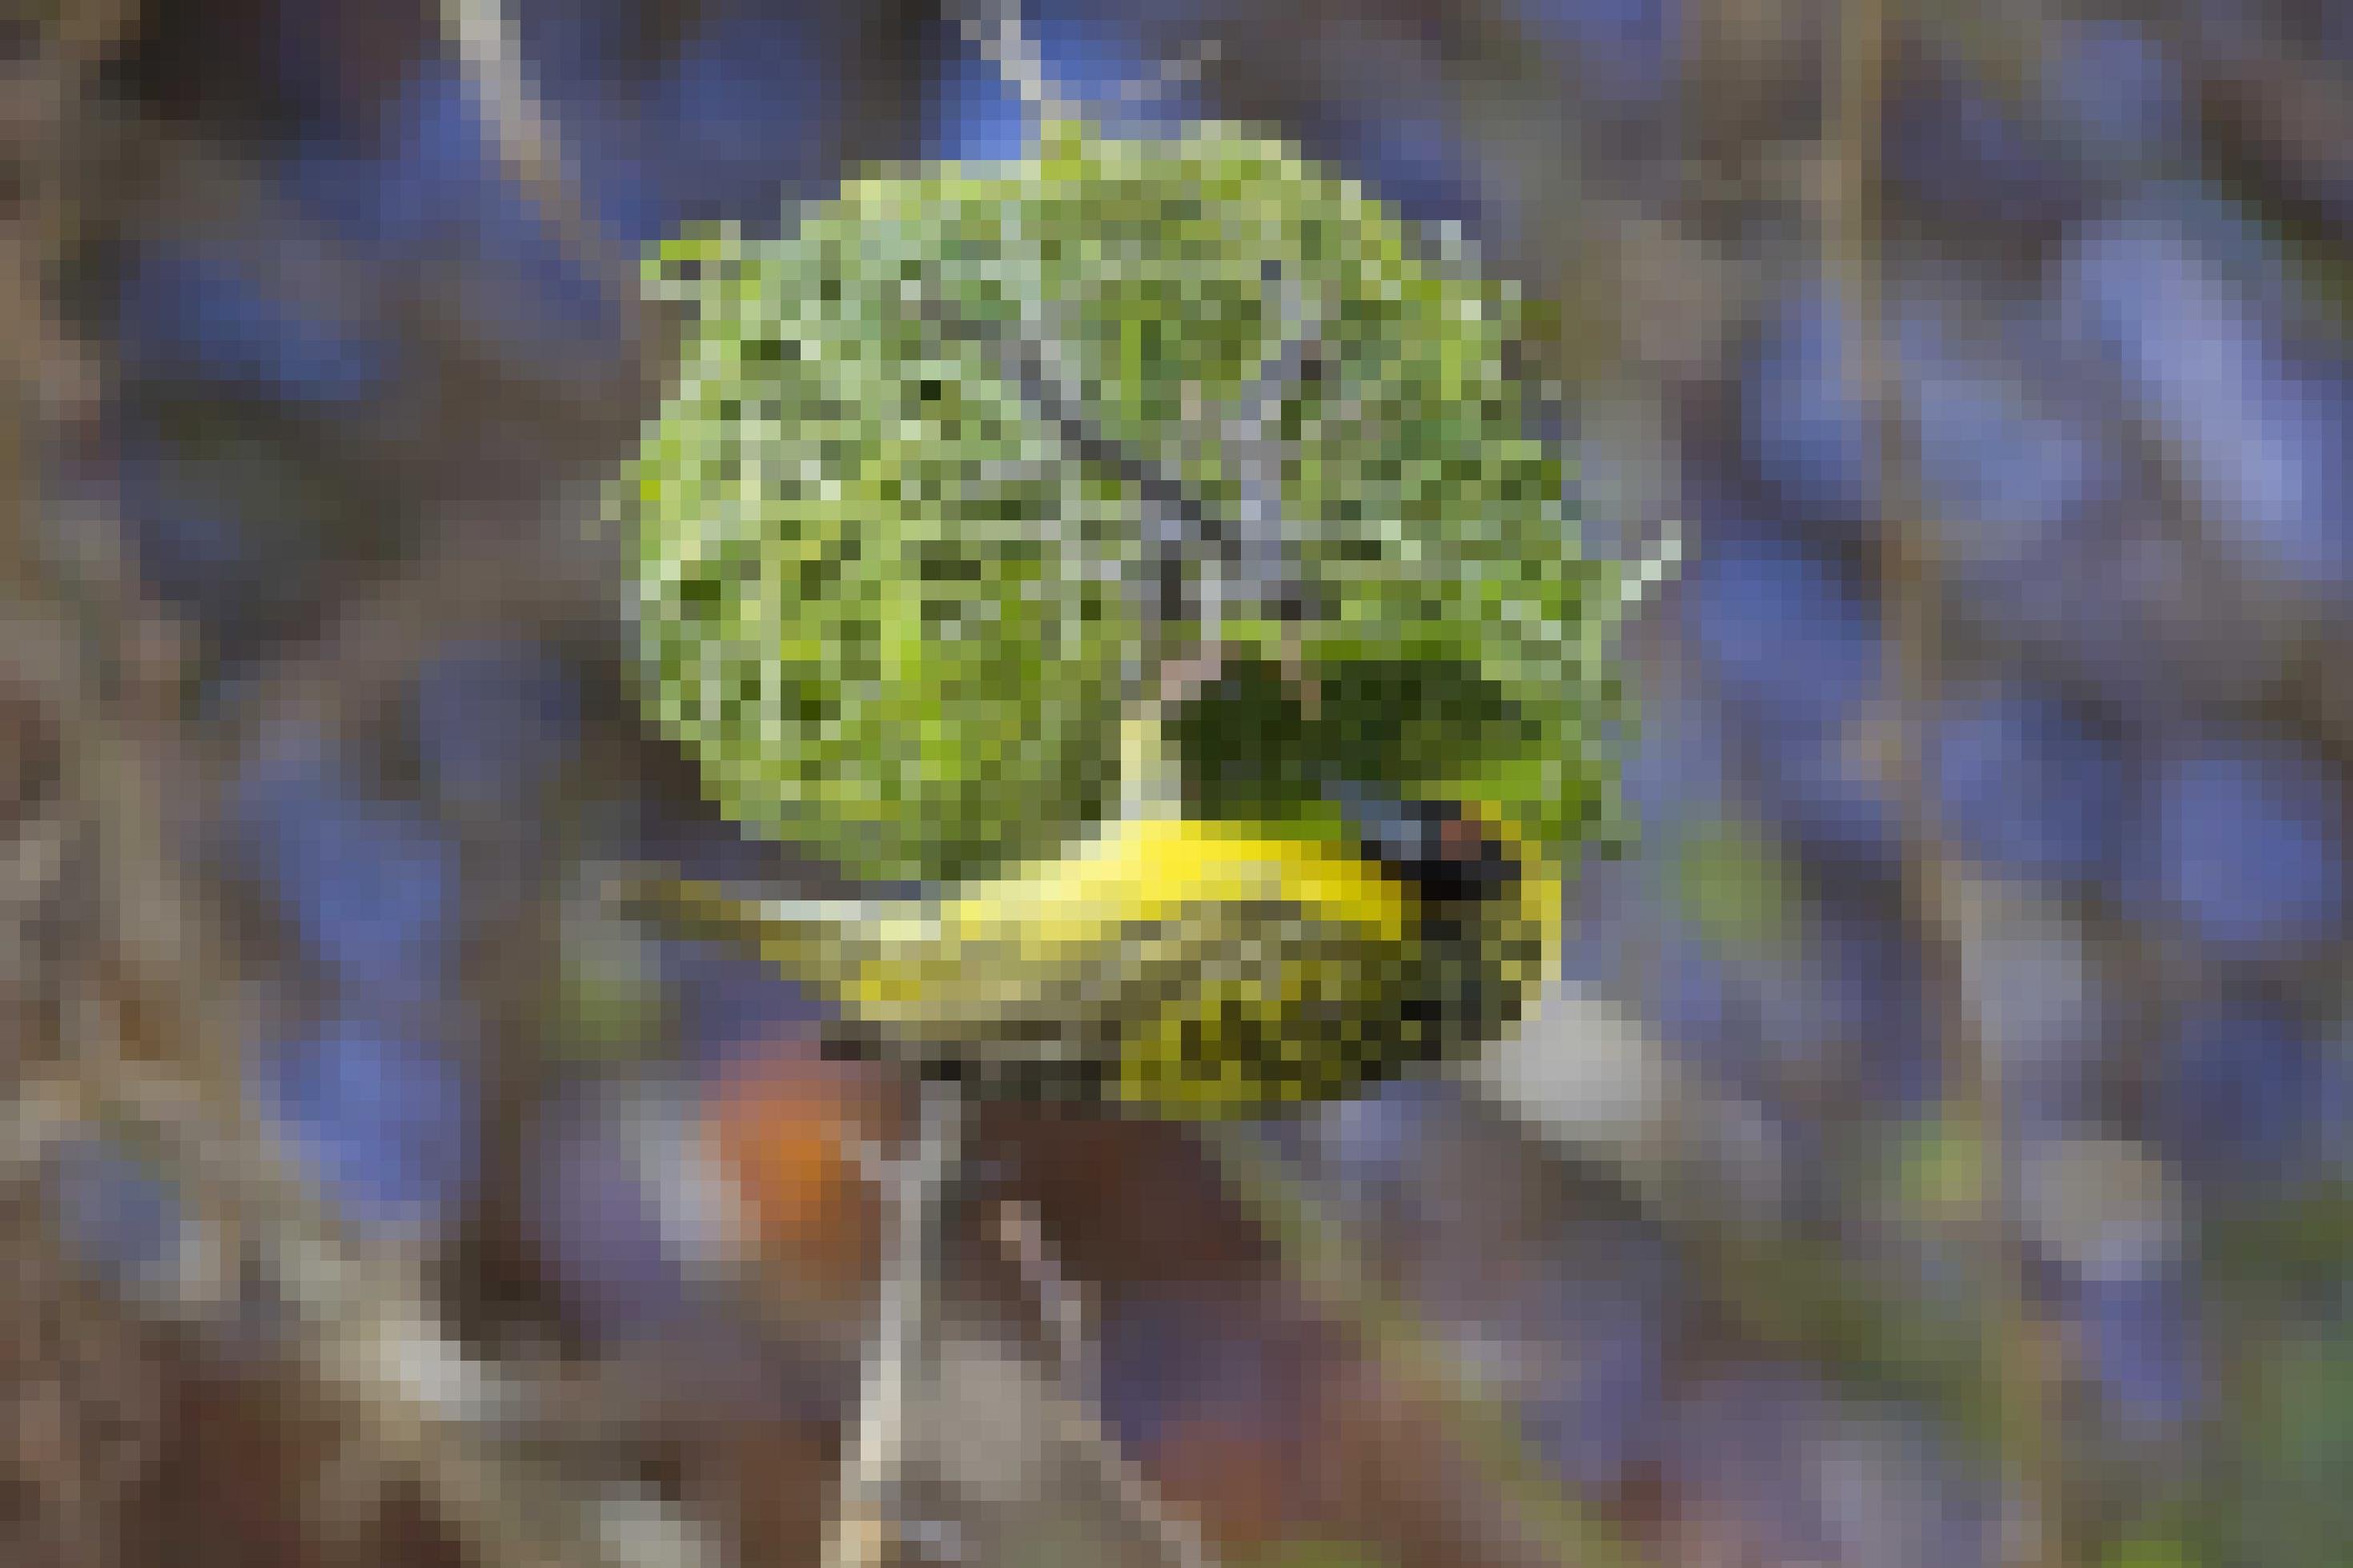 Der gelb-schwarze Vogel hat aus Gras ein Nest geschaffen, das von der Form her einem Schneckenhaus gleicht.